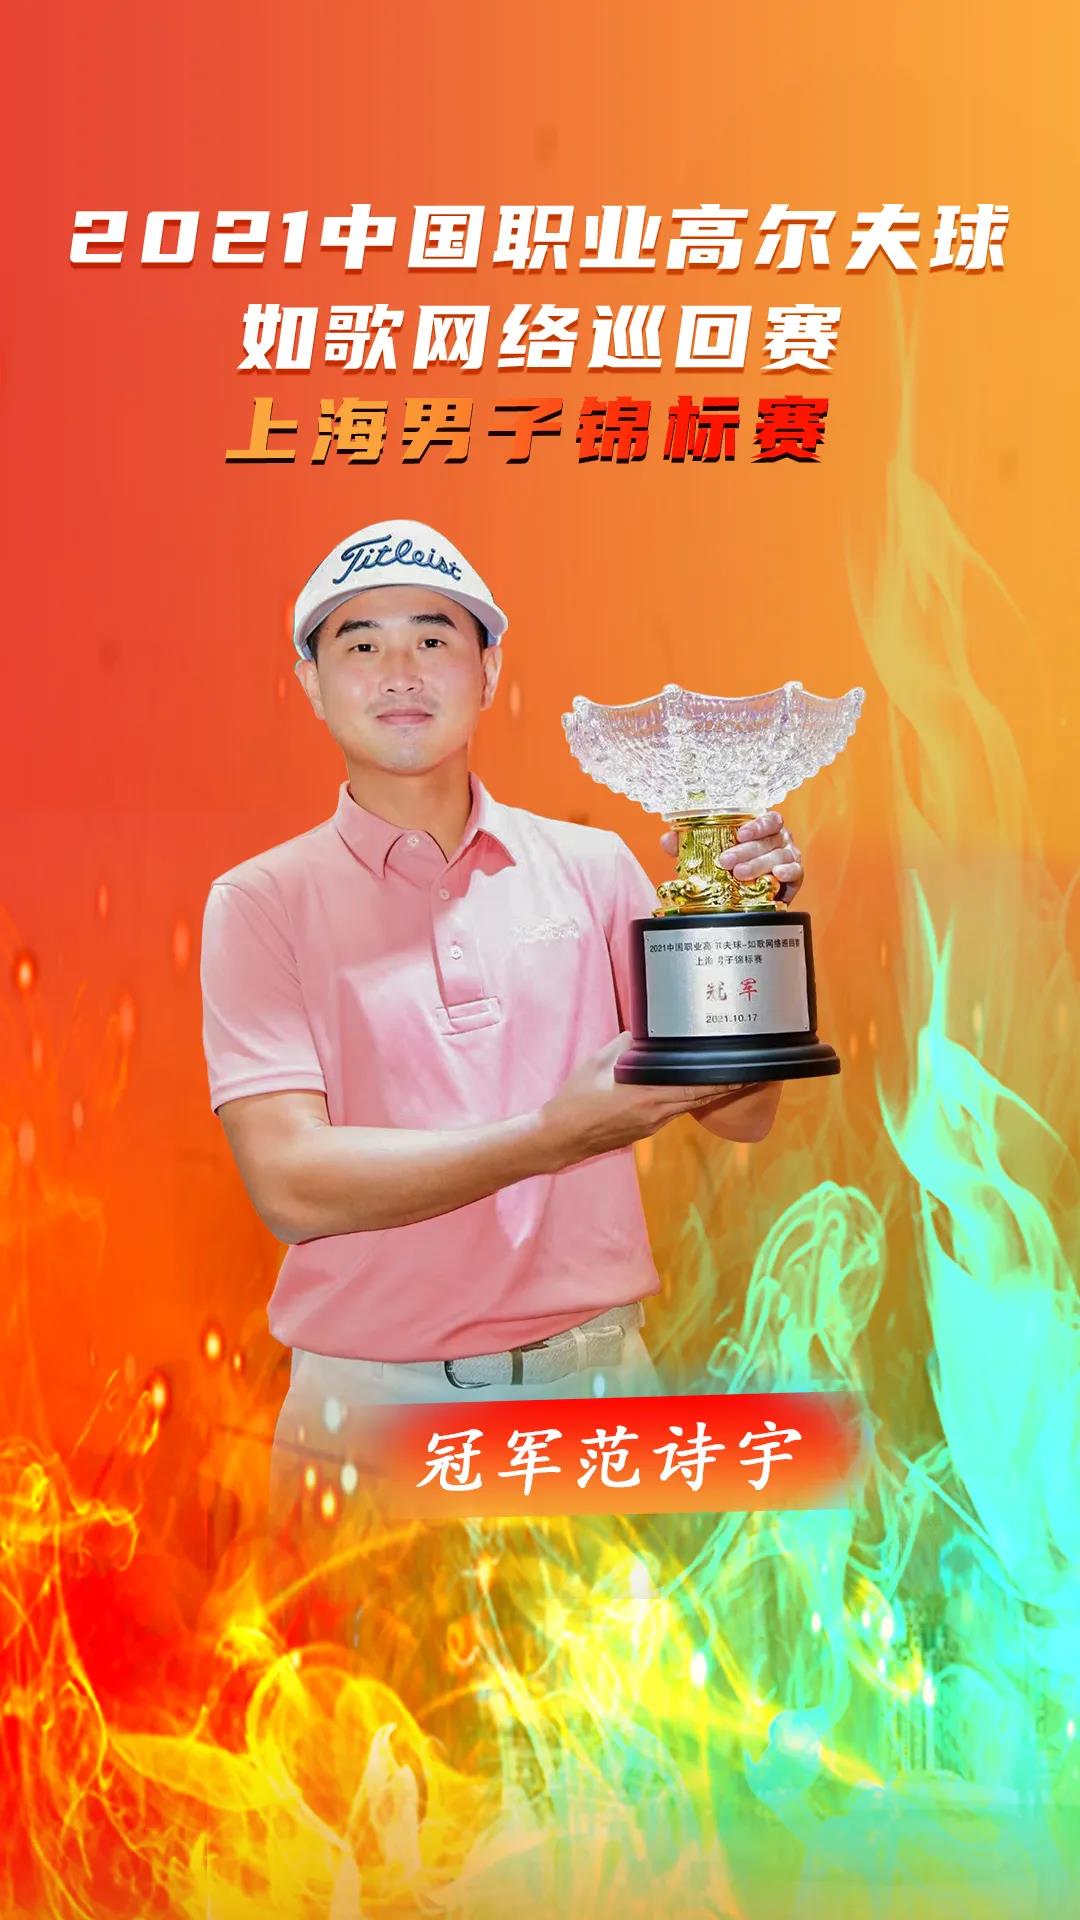 中国职业高尔夫球-如歌网络巡回赛冠军